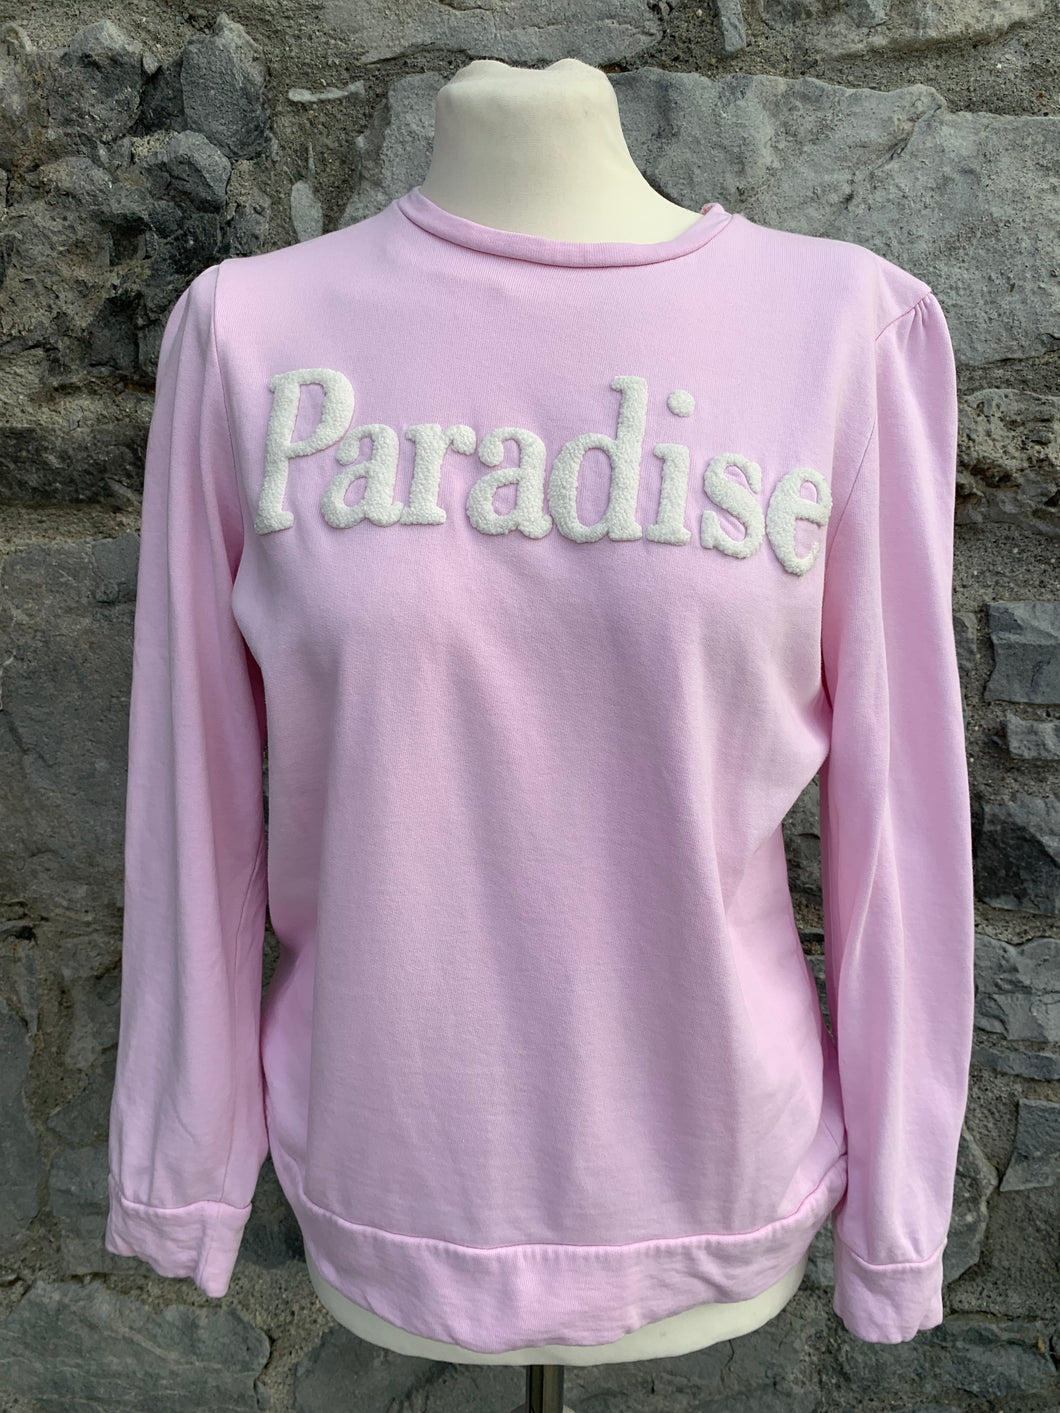 Paradise sweatshirt  uk 12